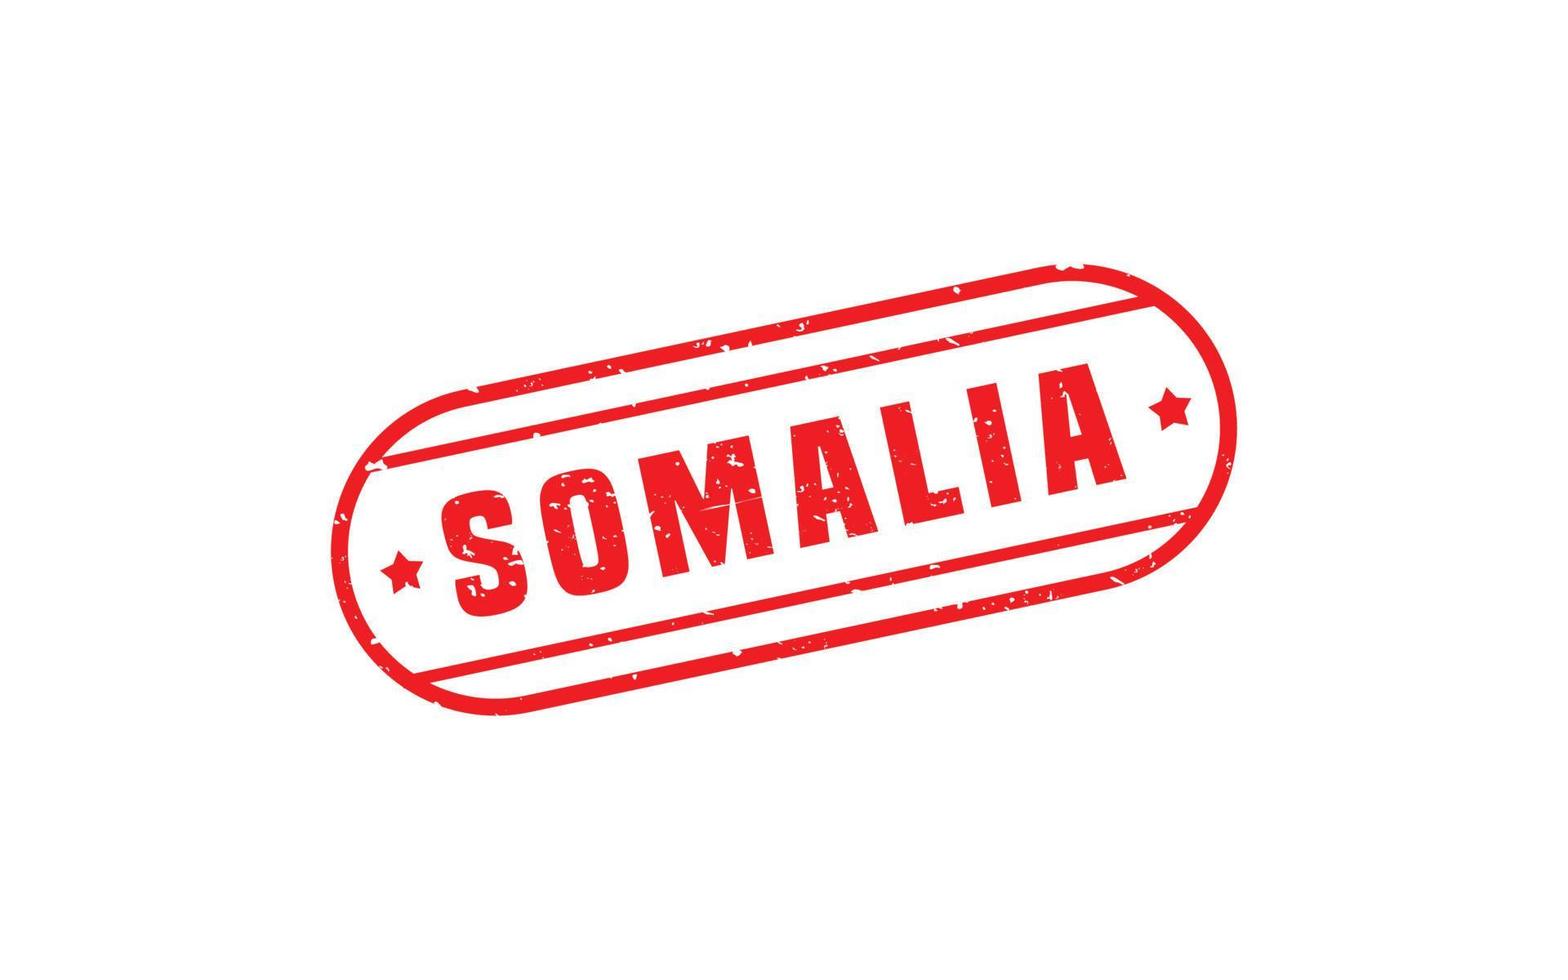 Somalia Briefmarke Gummi mit Grunge Stil auf Weiß Hintergrund vektor